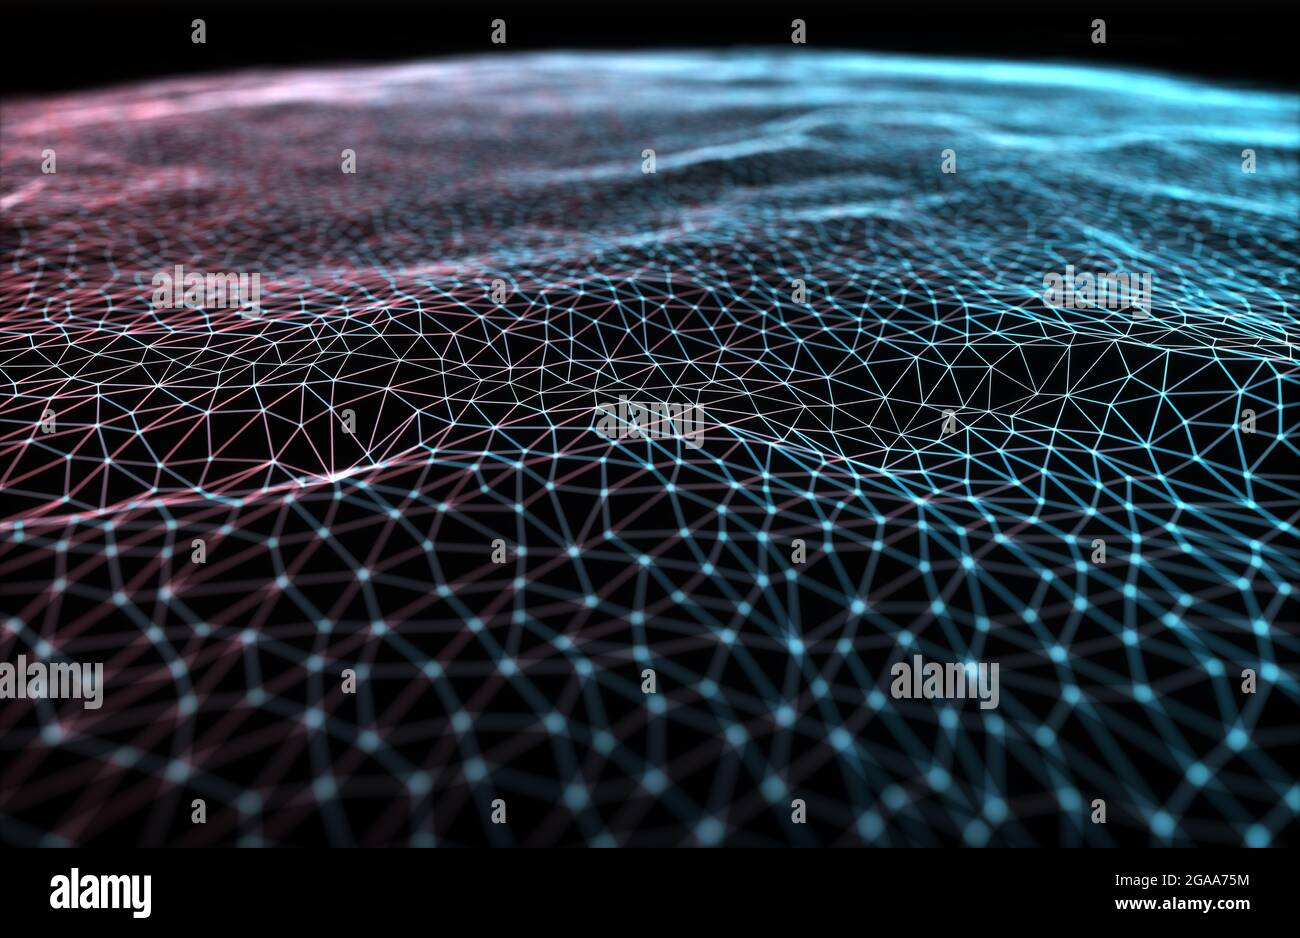 Abstrakter Hintergrund. Bunte Netz miteinander verbundene Linien. Cloud-Computing-Konzept. 3D Abbildung. Stockfoto